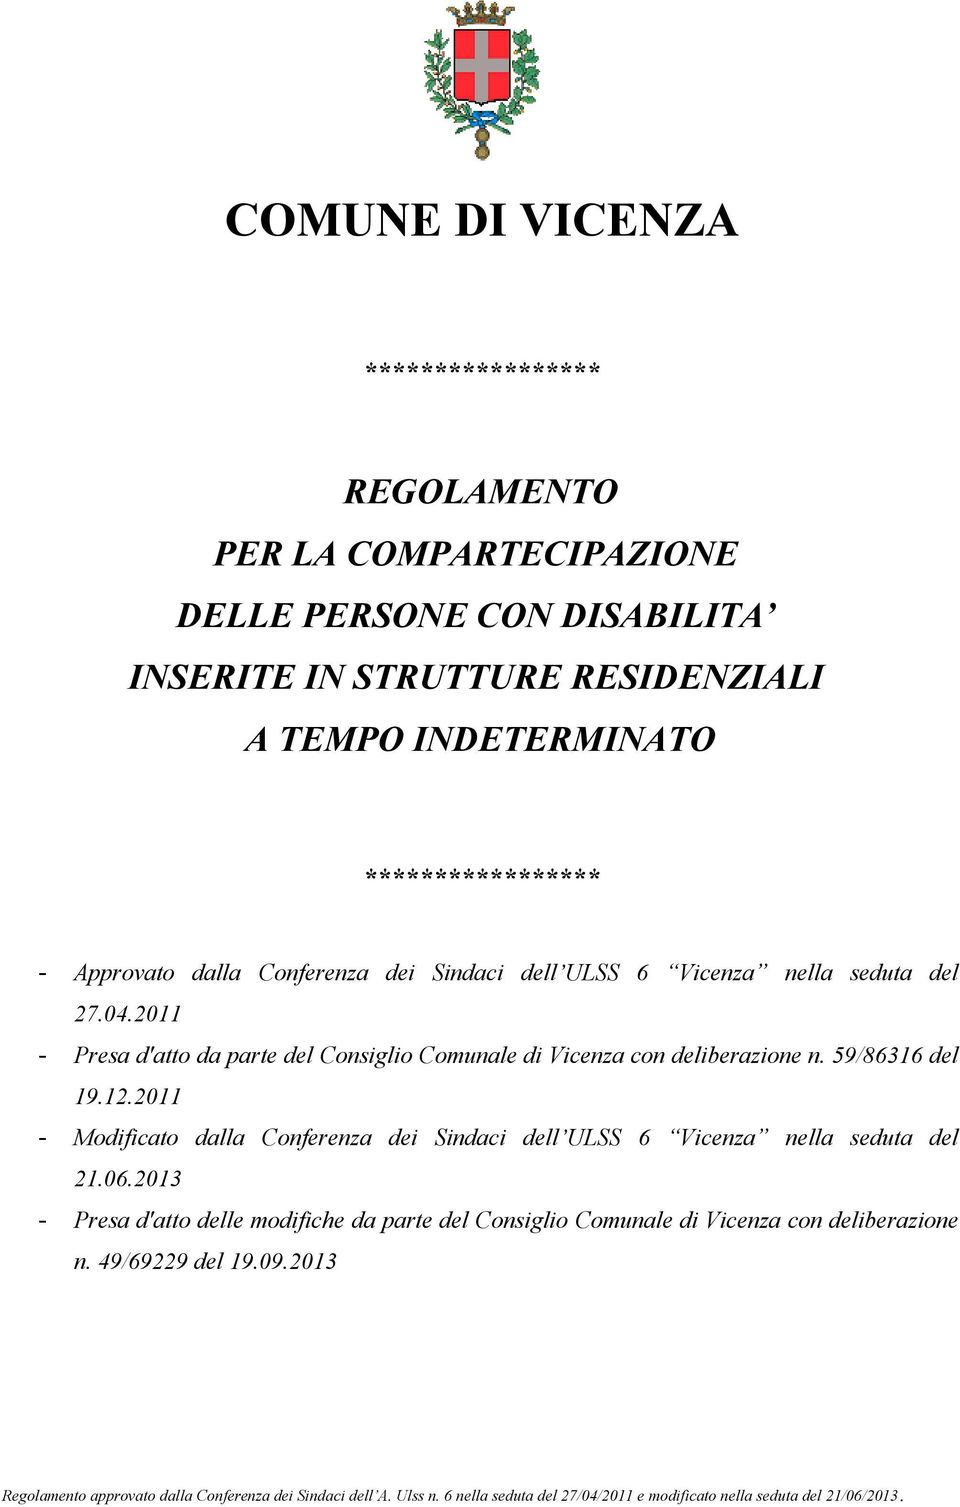 2011 - Presa d'atto da parte del Consiglio Comunale di Vicenza con deliberazione n. 59/86316 del 19.12.